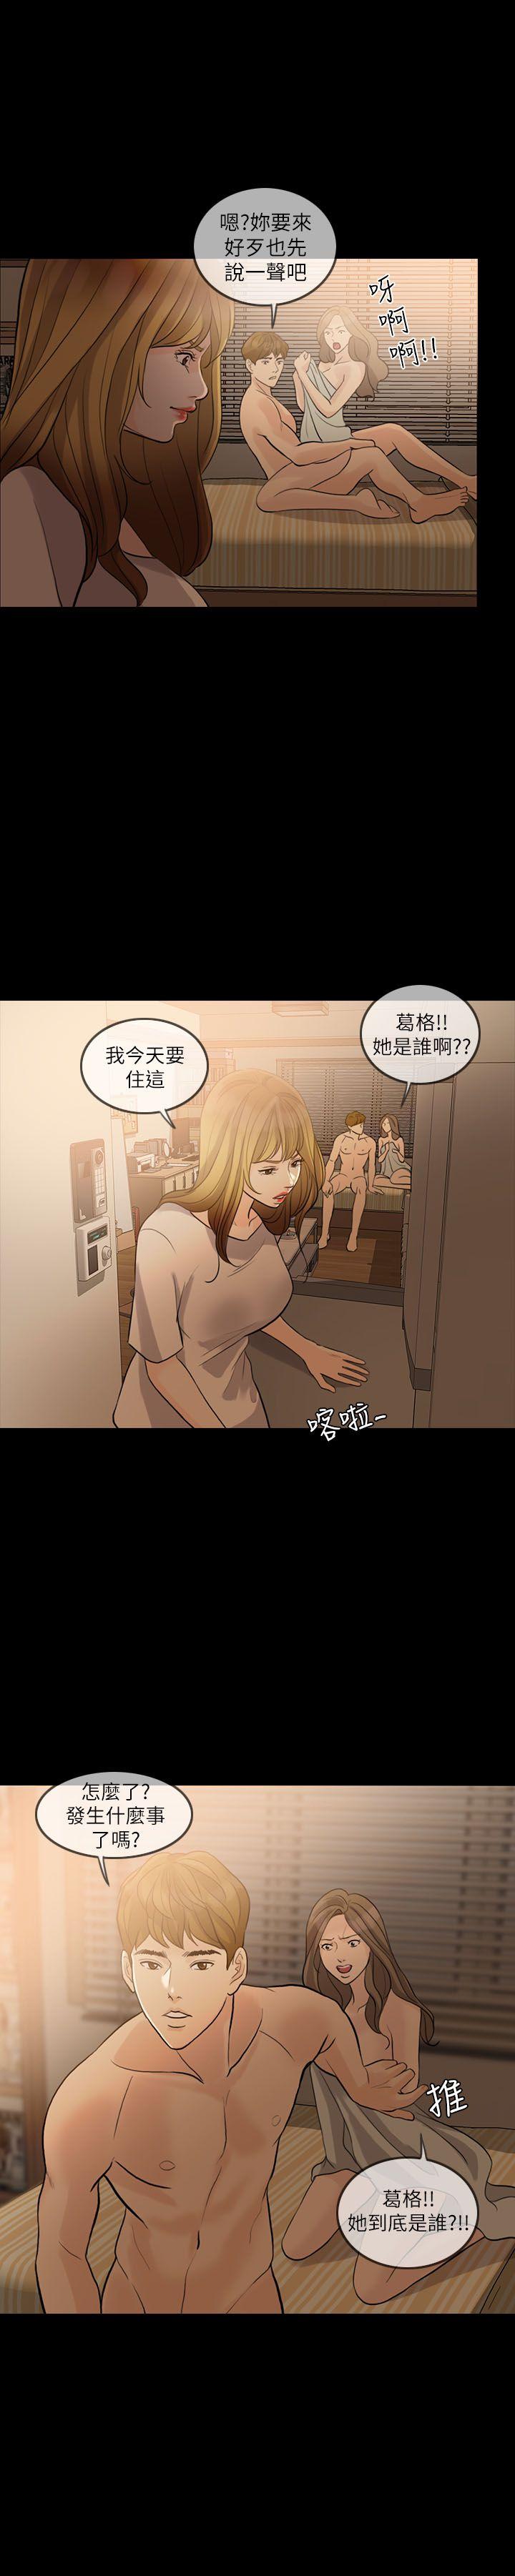 韩国污漫画 失控的愛 第9话 28